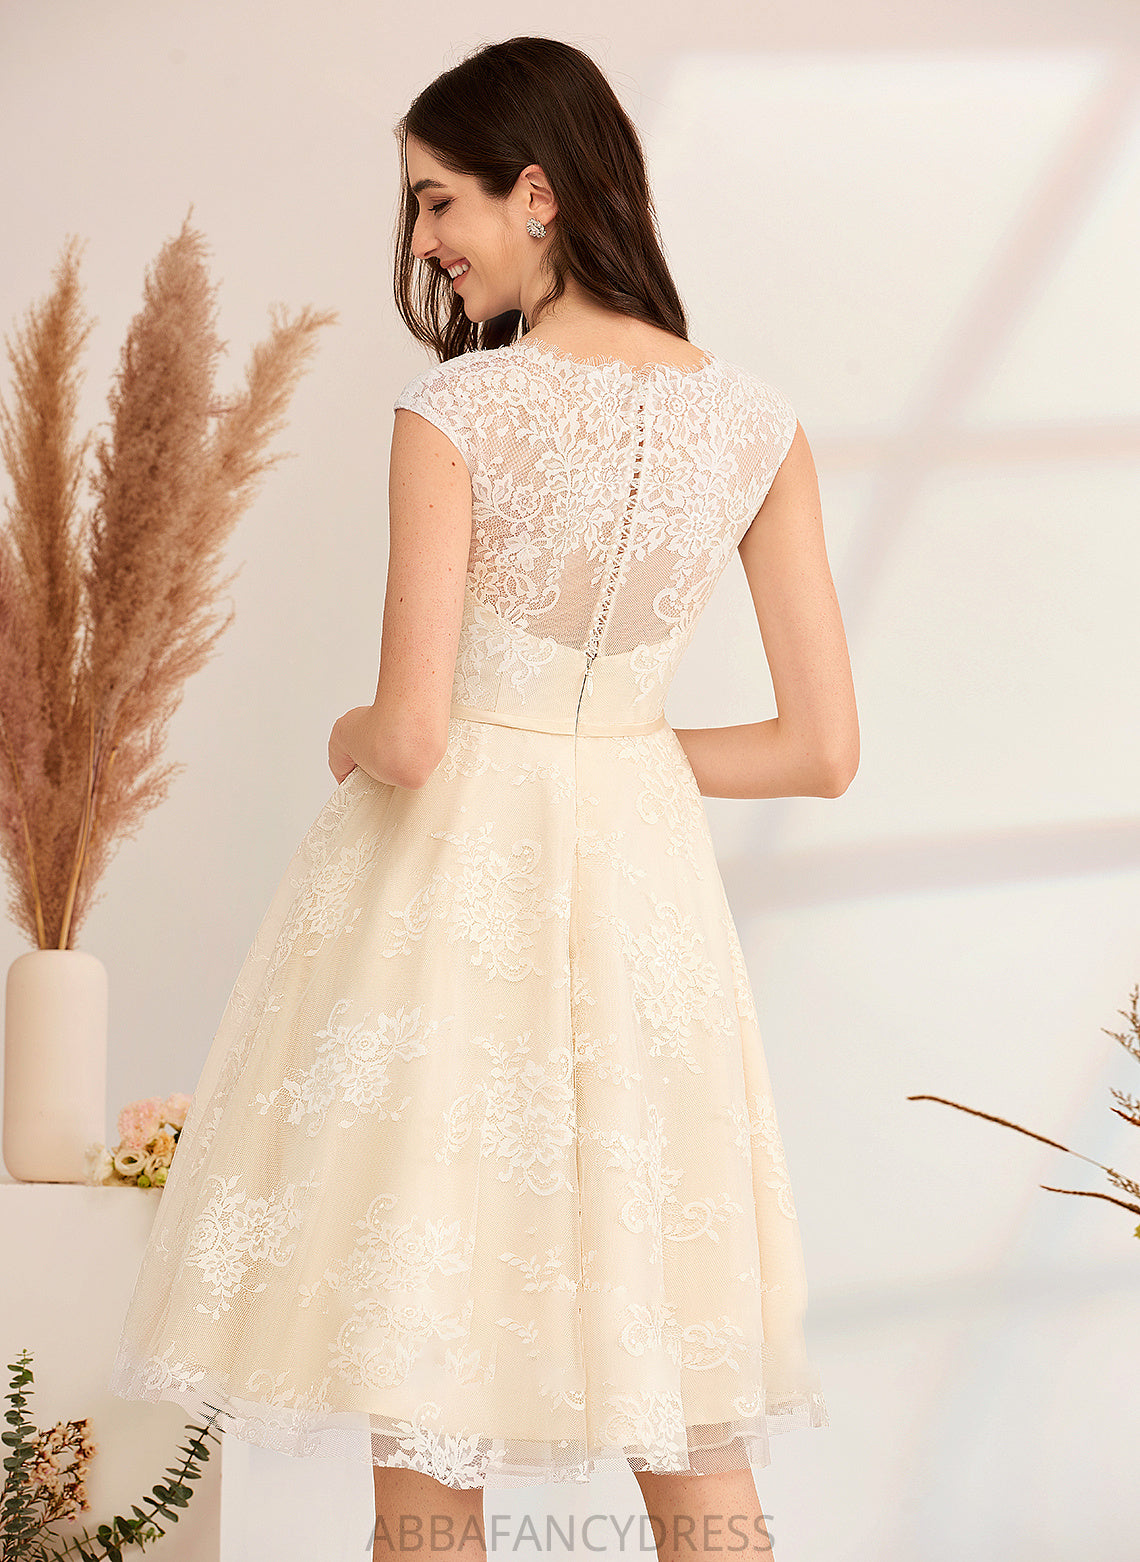 Lace Wedding Dress Wedding Dresses Knee-Length Alena With A-Line V-neck